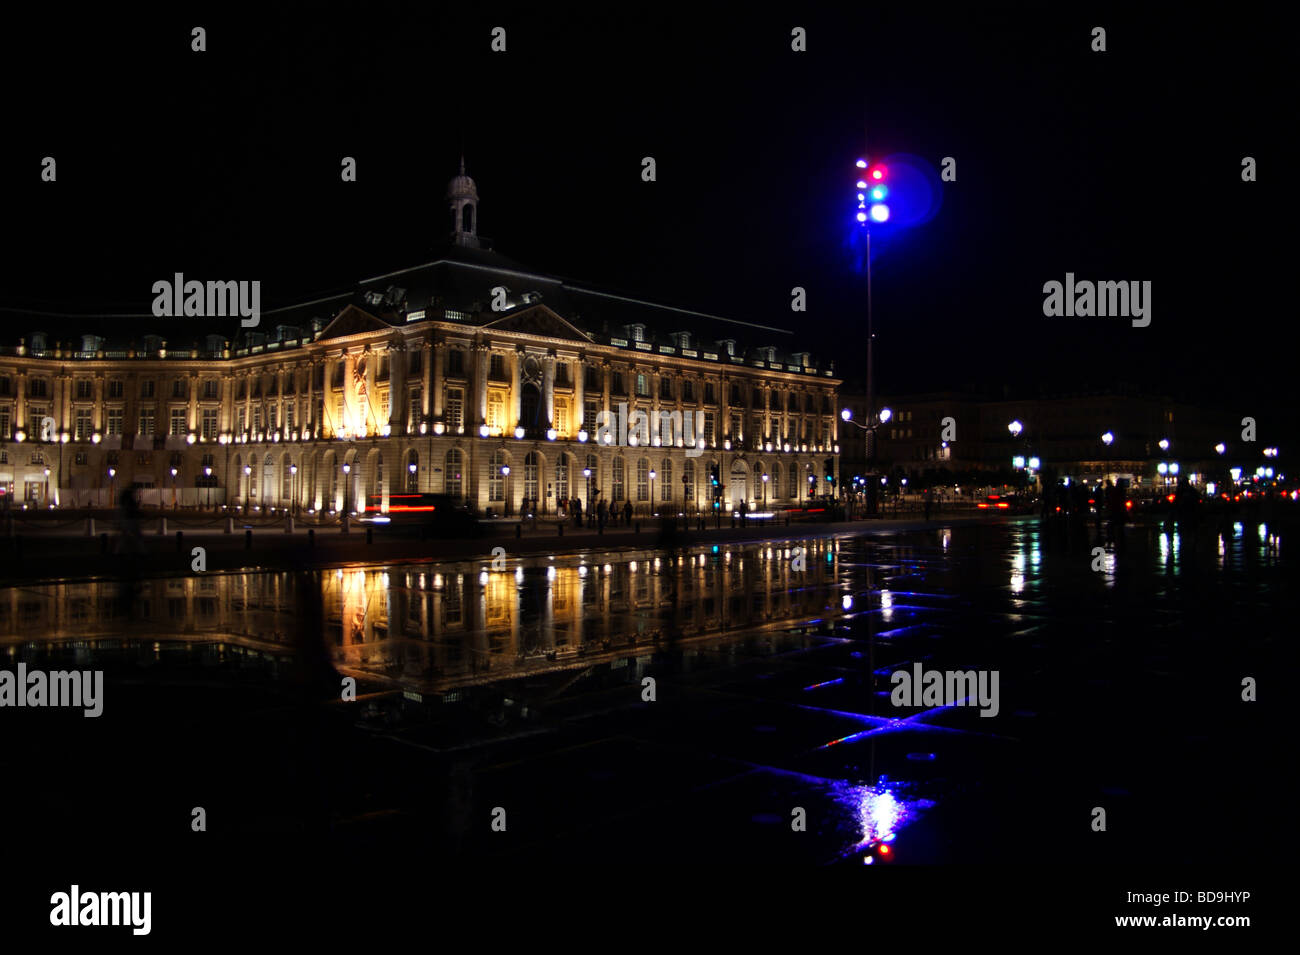 Miroir d'eau (eau miroir), nuit, Place de la Bourse, Bordeaux, Gironde, France Banque D'Images